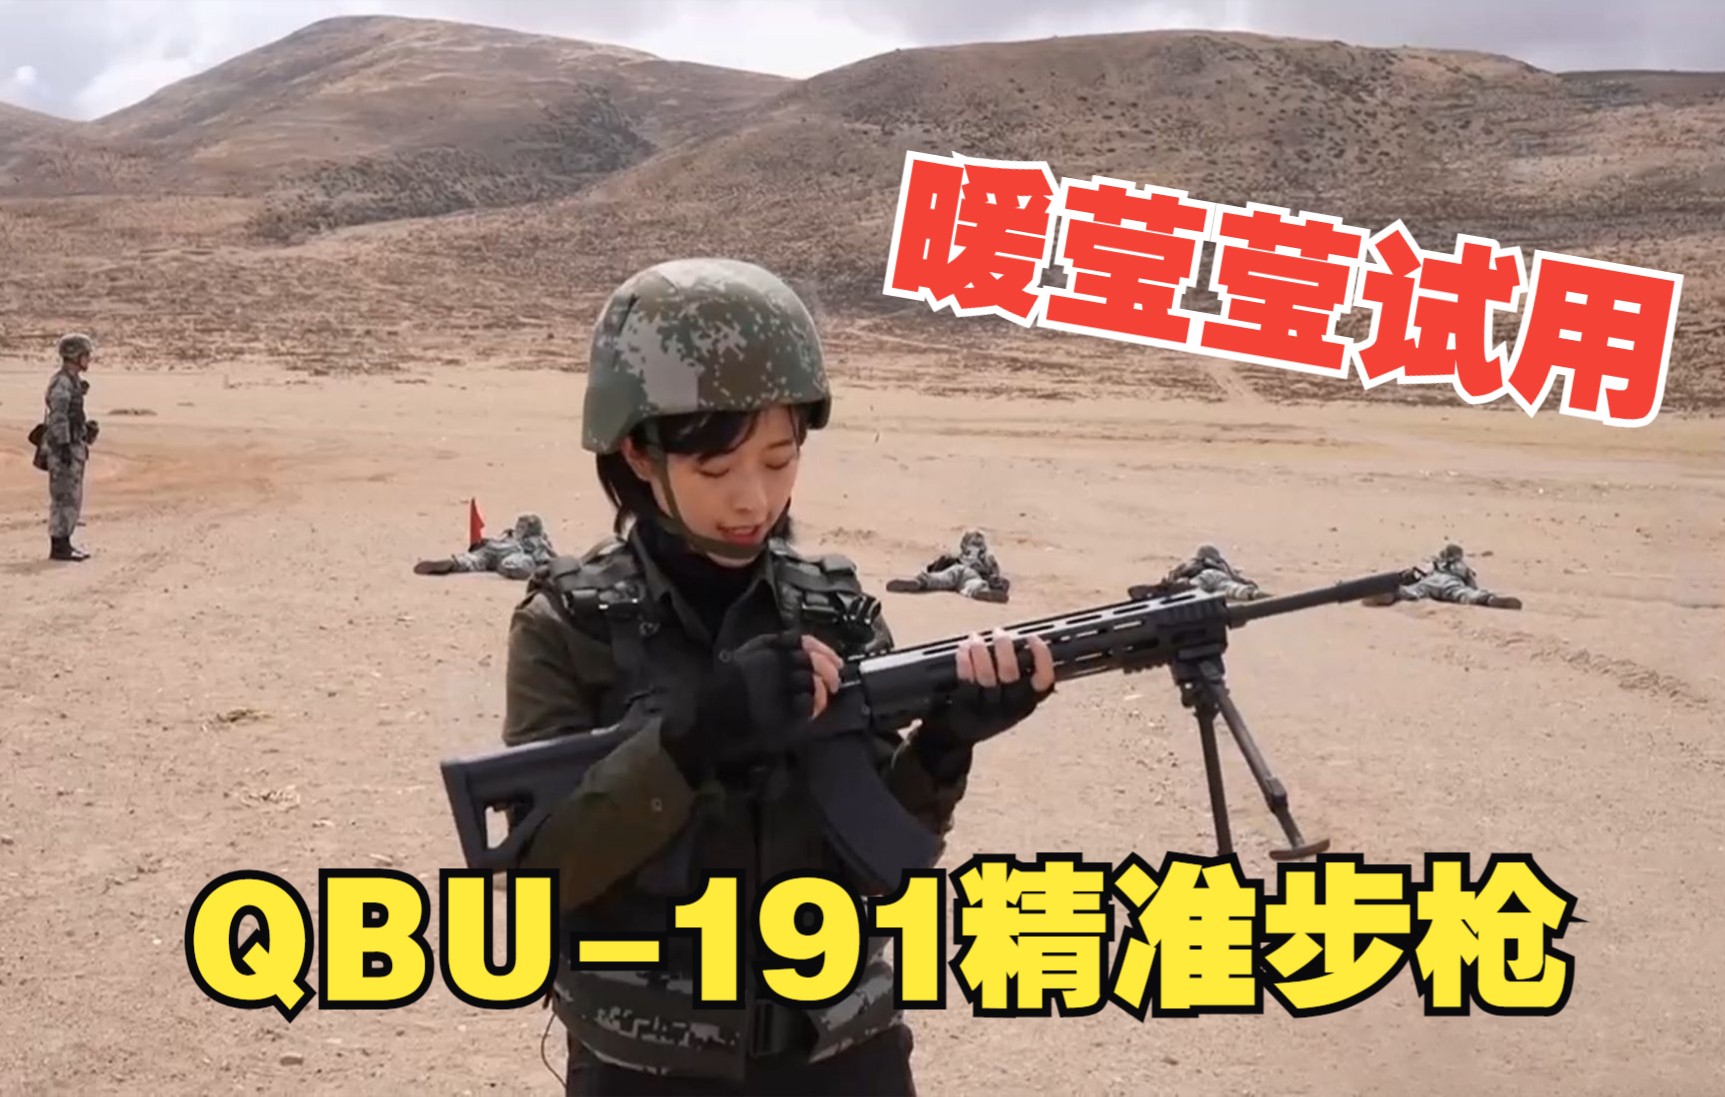 暖莹莹试用QBU-191精准步枪